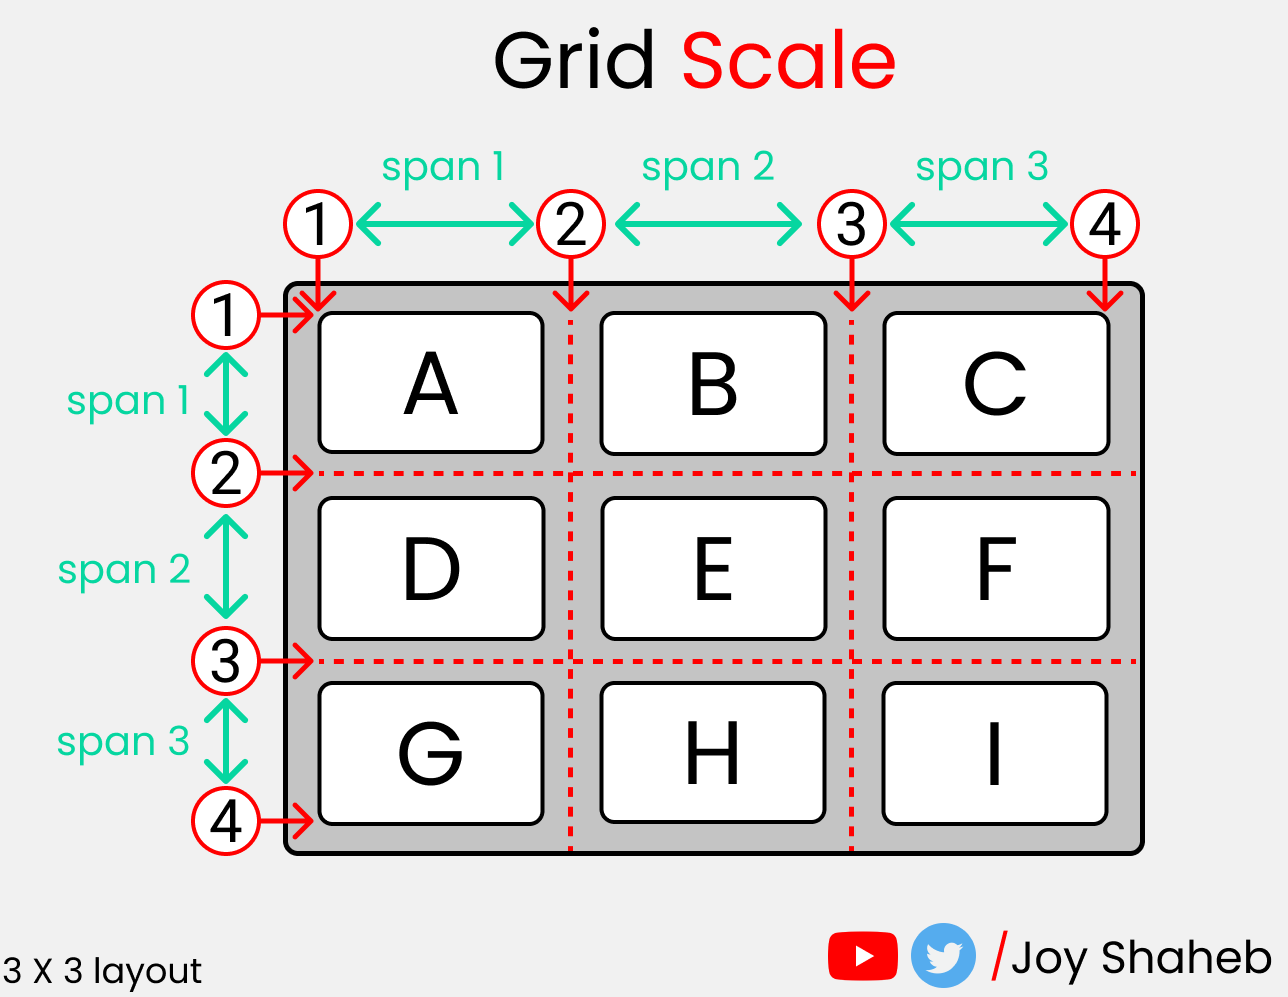 Полный самоучитель по CSS Grid со шпаргалкой25